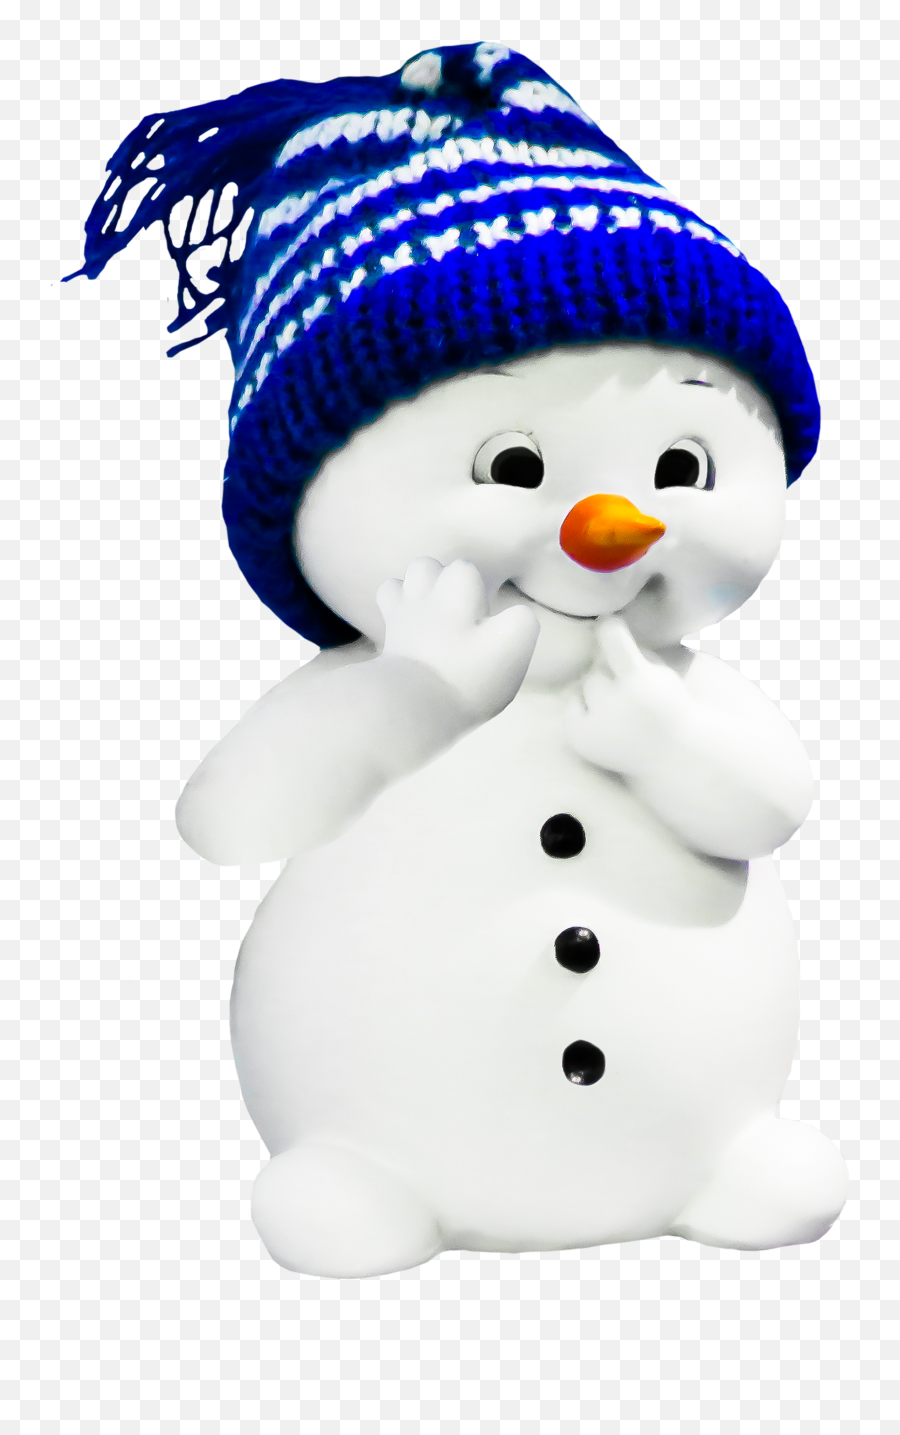 Snow Man With The Hat Clipart Free Image - Augurando It Buongiorno Invernale Emoji,Winter Hat Clipart